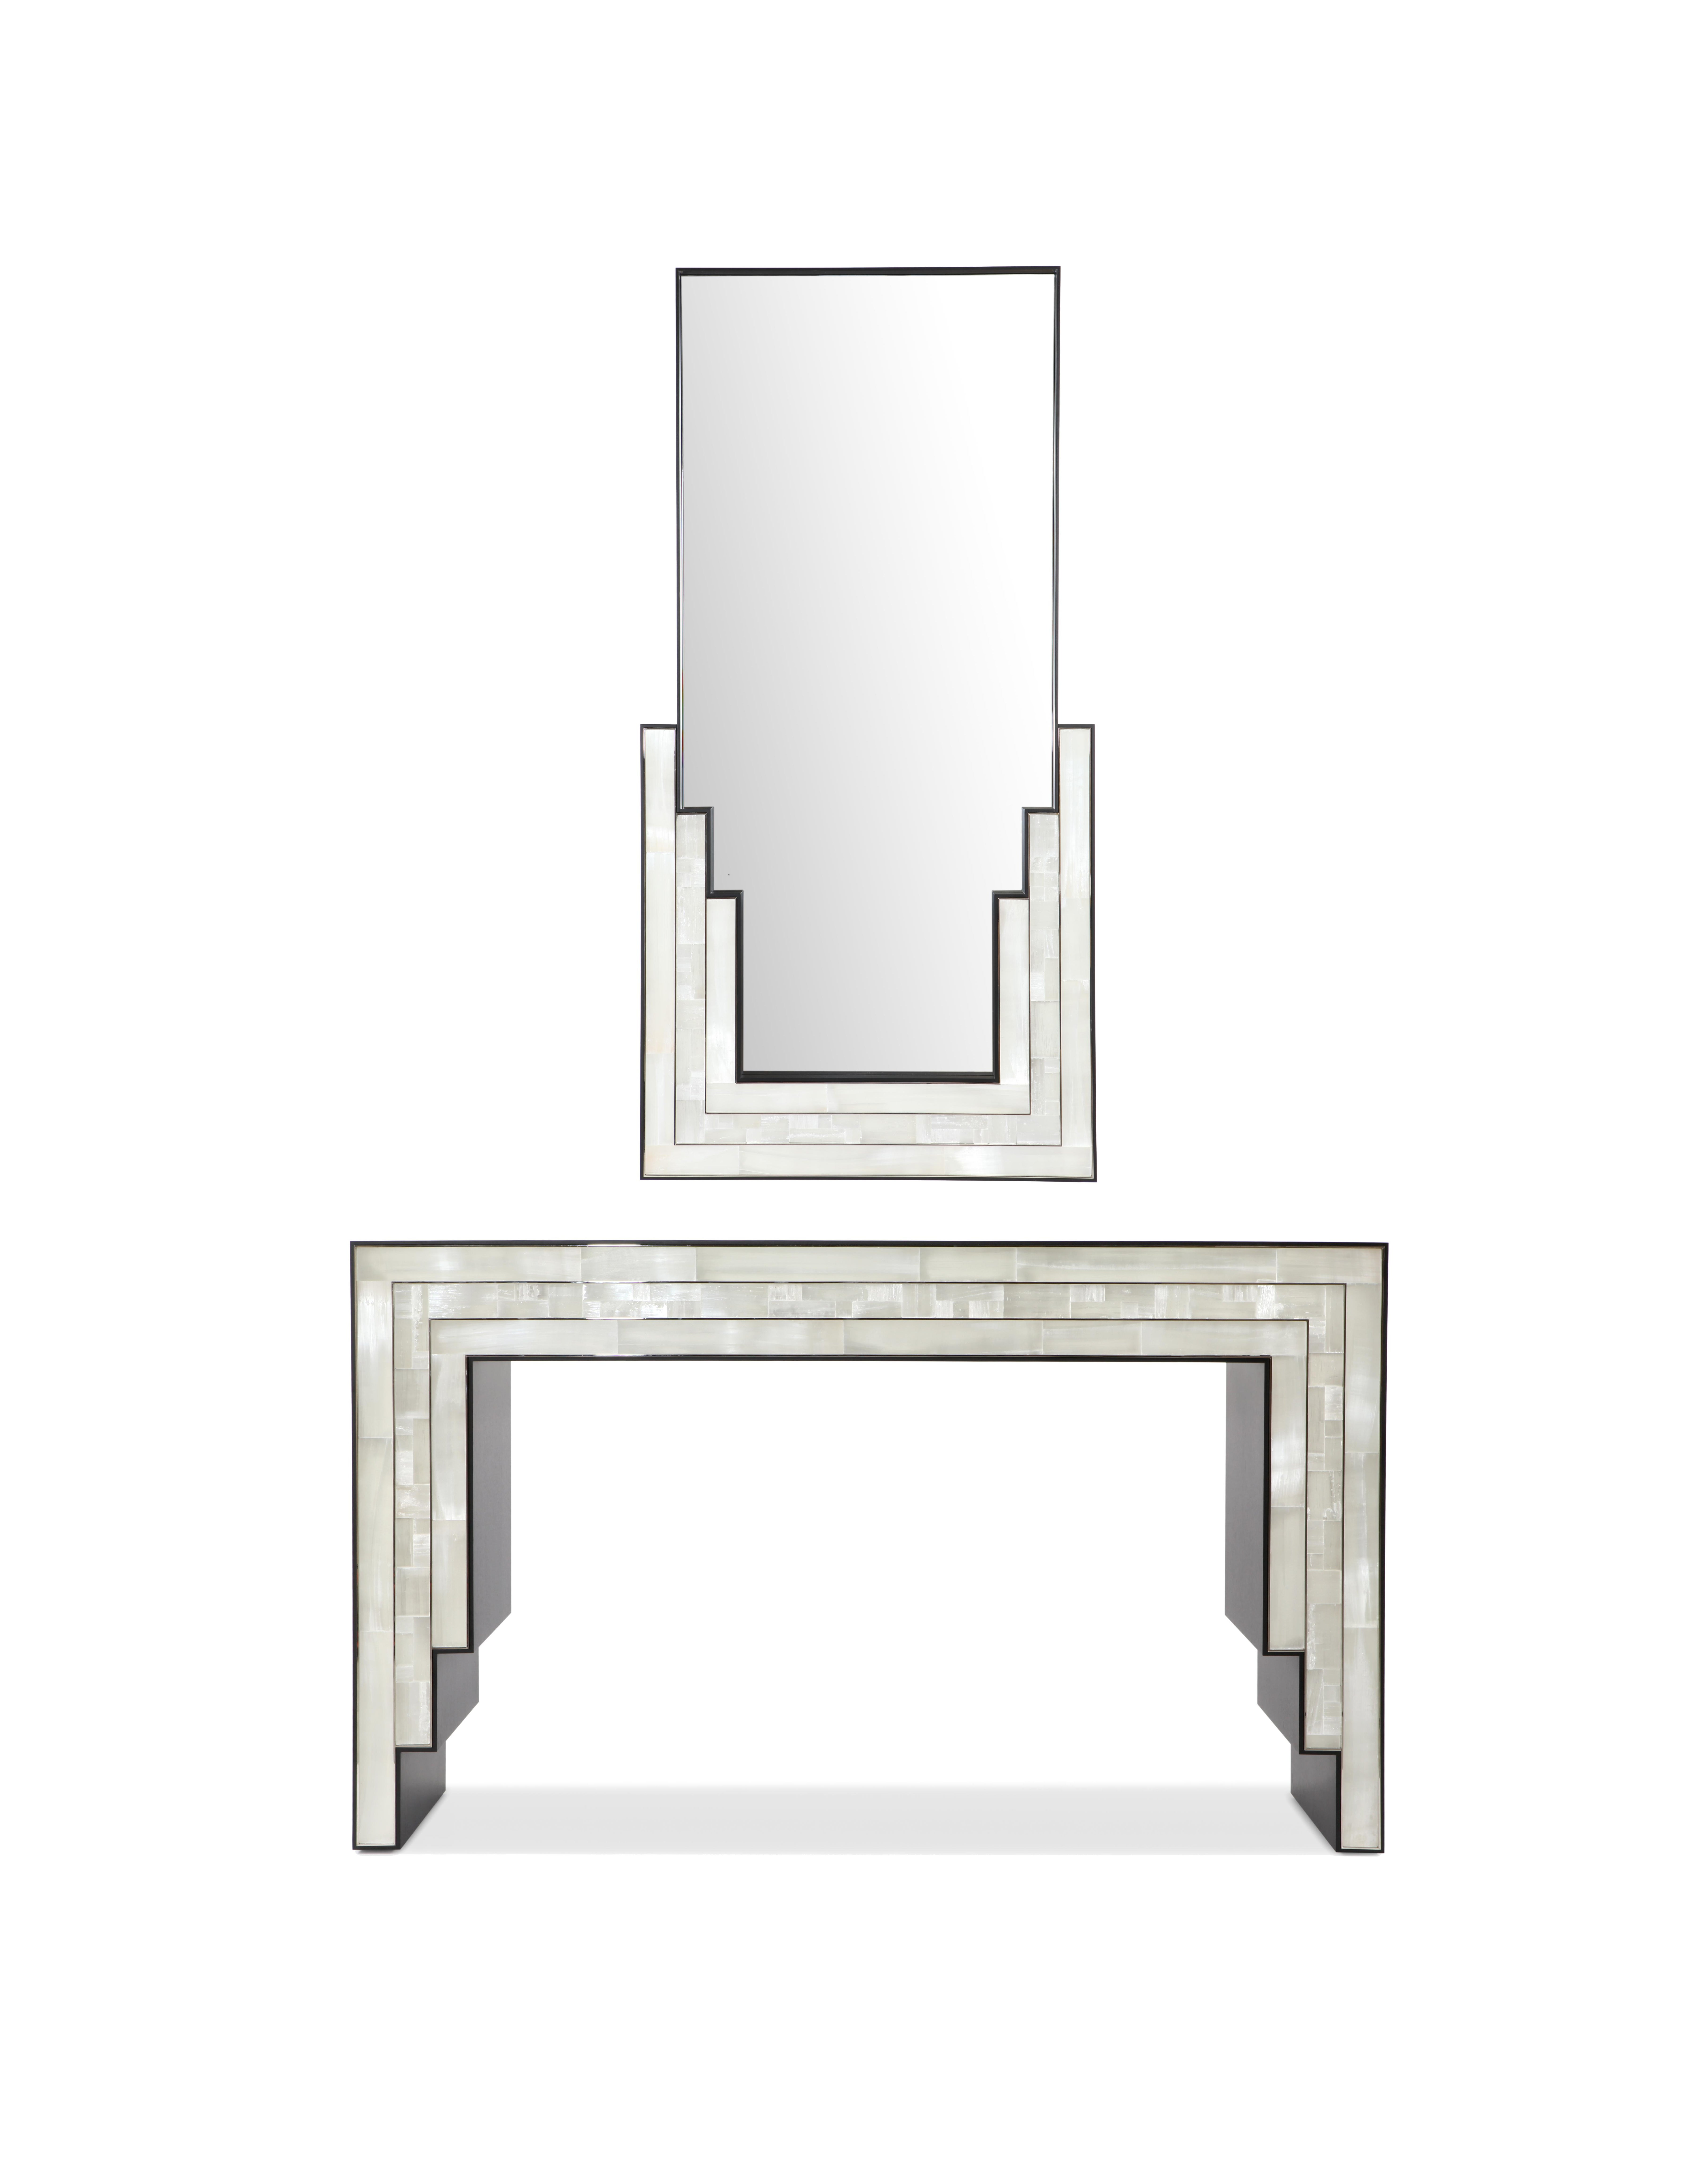 Der Escalier-Spiegel stammt aus der Icon'S-Kollektion von Charles Burnand. Es wurde in Collaboration mit dem in New York ansässigen Designer Caleb Anderson von Drake/Anderson entworfen. Der Spiegel ist mit poliertem und mosaikartigem Blockgips,